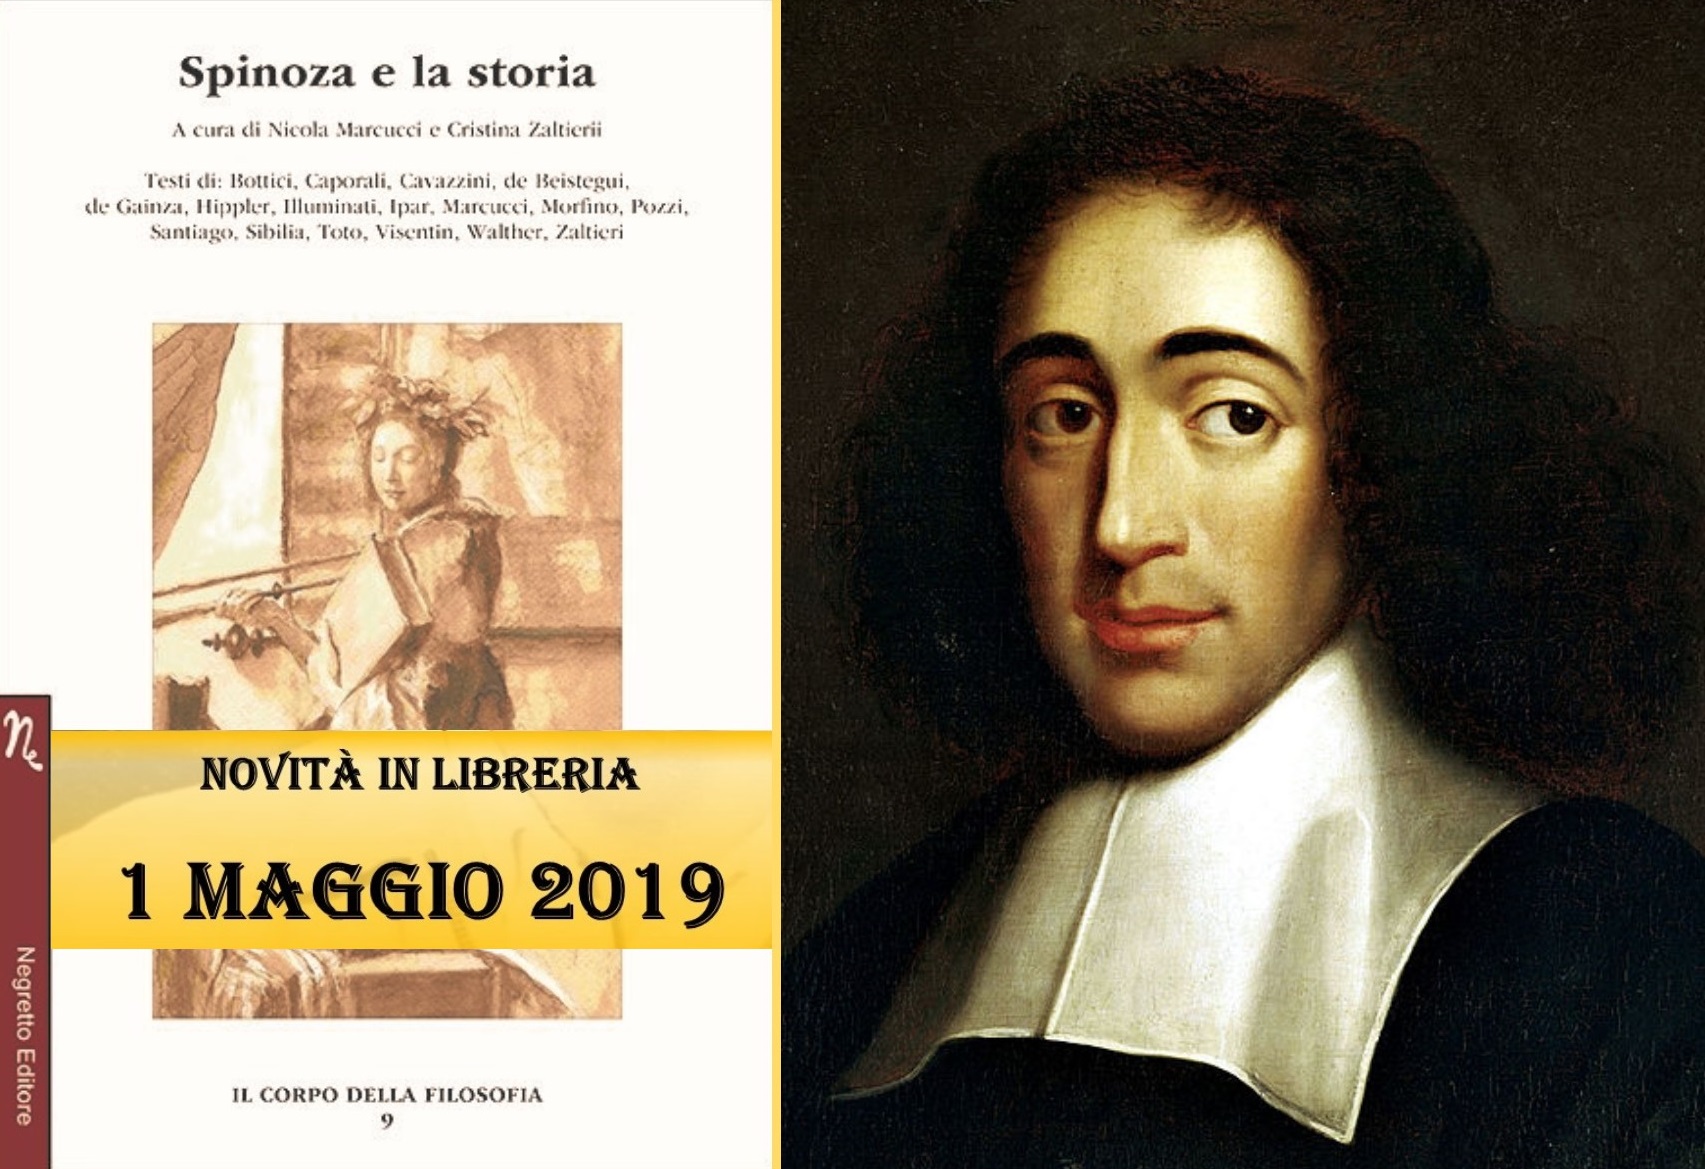 In libreria: “Spinoza e la storia” a cura di Cristina Zaltieri e Nicola Marcucci edito da Negretto Editore